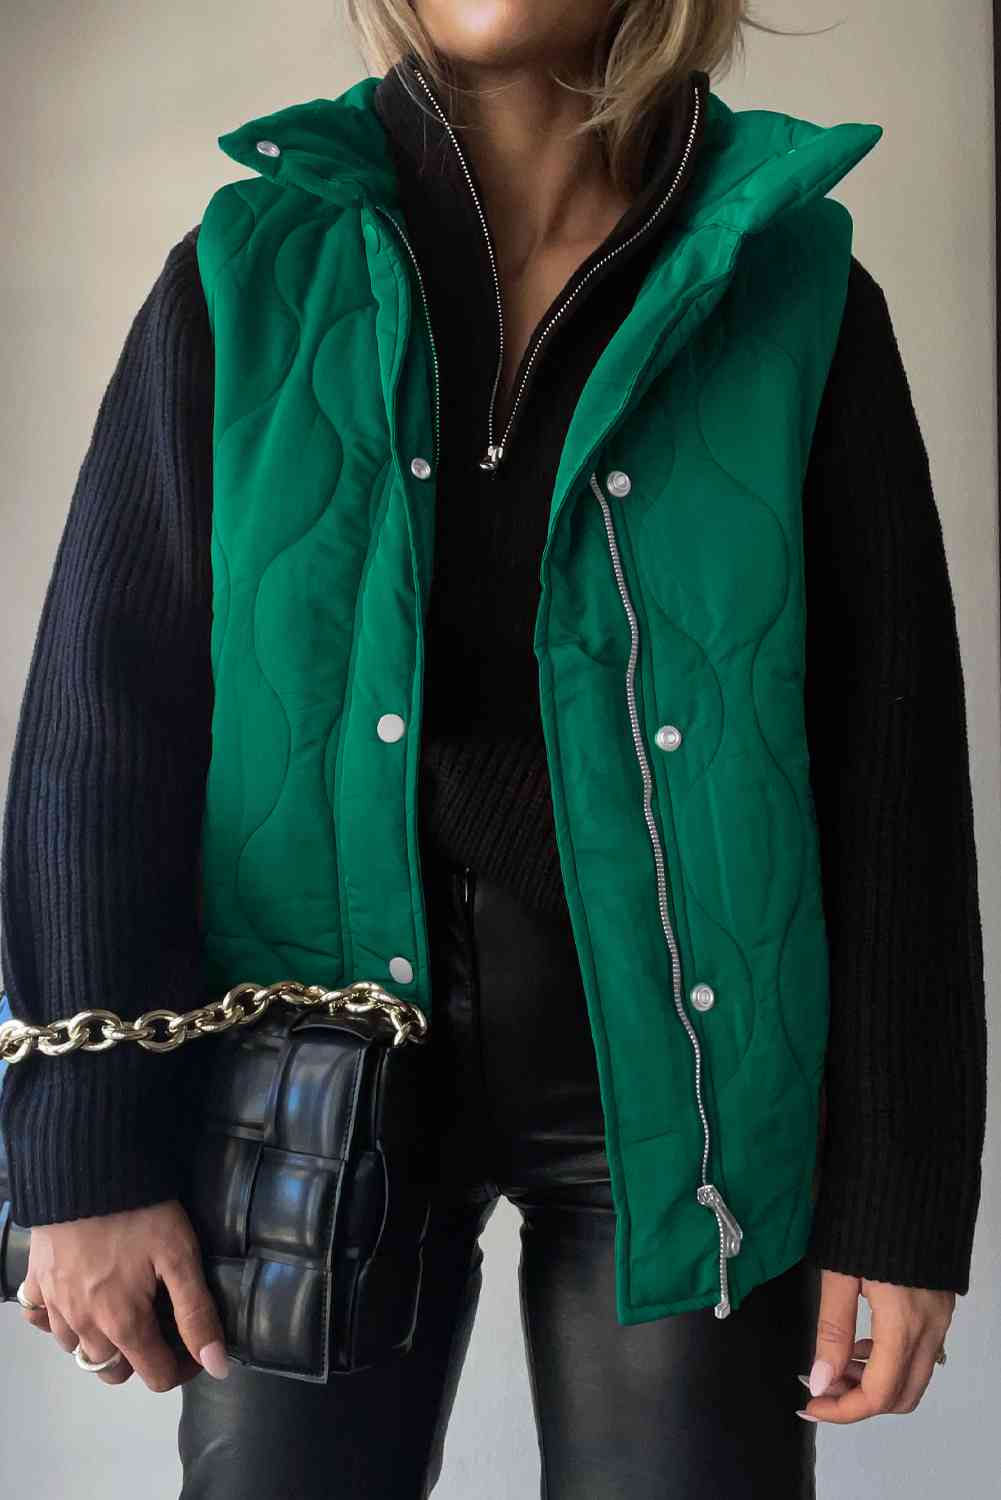 Collared Neck Vest with Pockets - TiffanyzKlozet